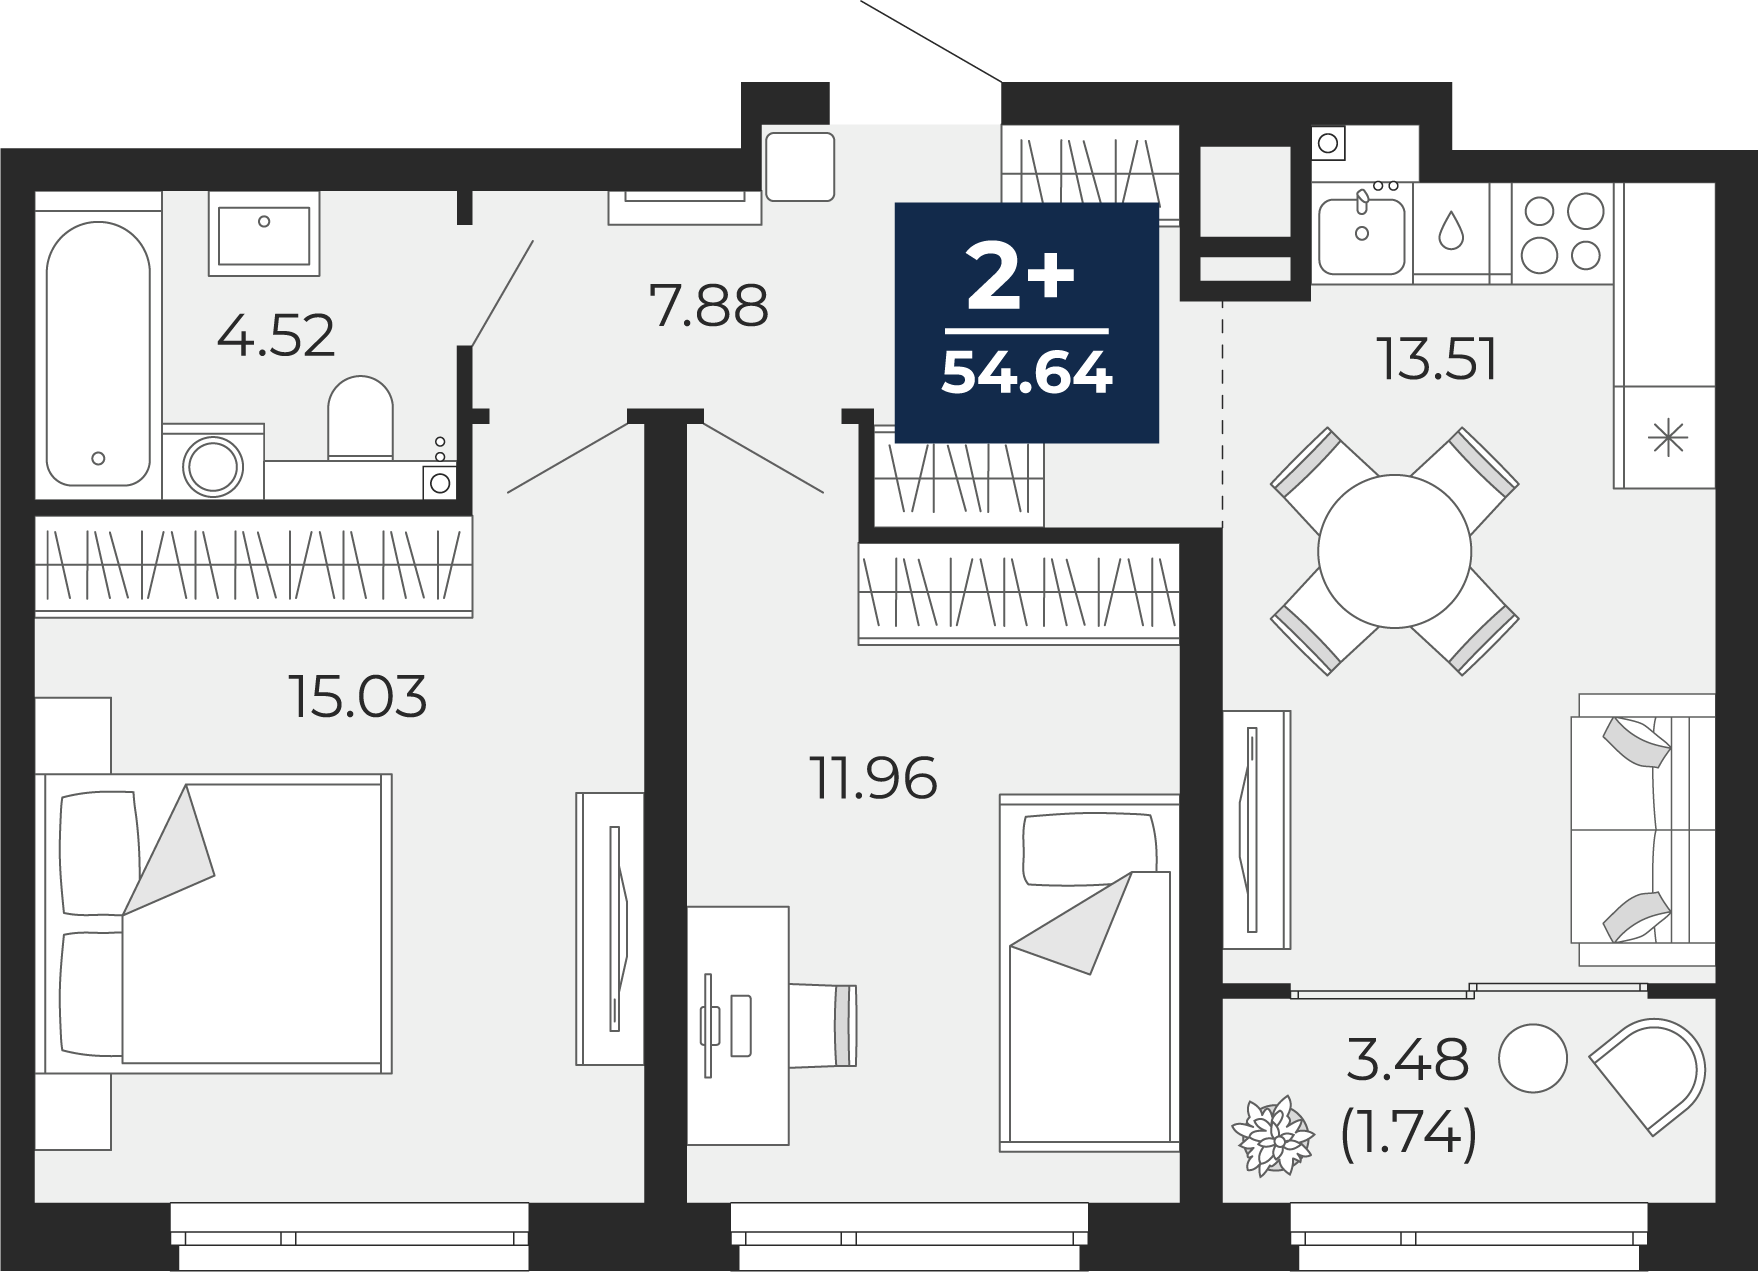 Квартира № 287, 2-комнатная, 54.64 кв. м, 18 этаж